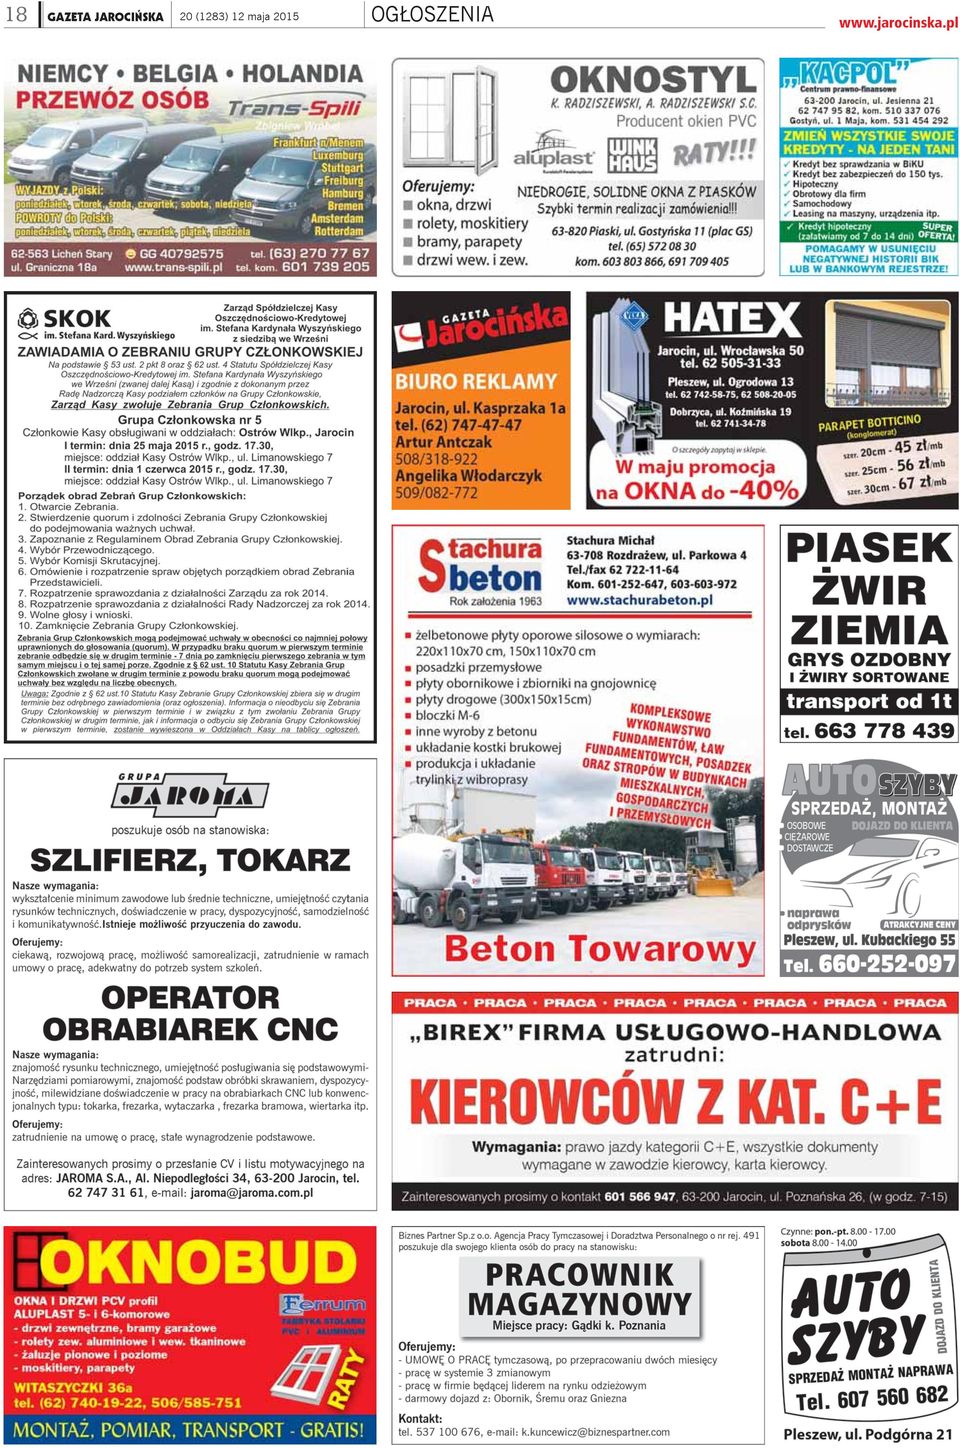 KOMOROWSKI W JAROCINIE, DUDA W ŻERKOWIE - PDF Free Download